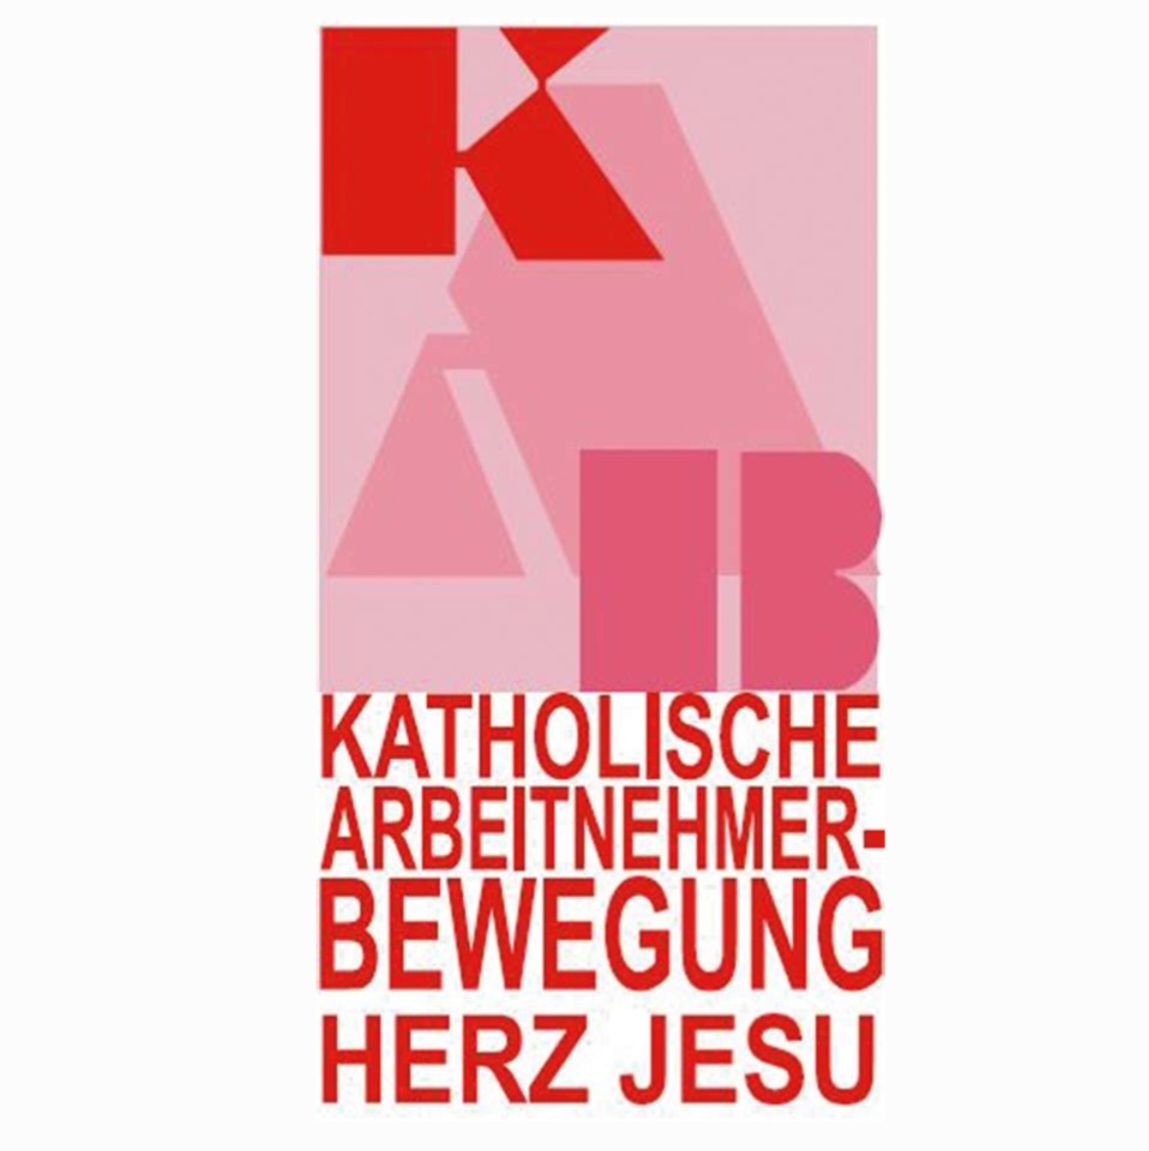 Kab logo